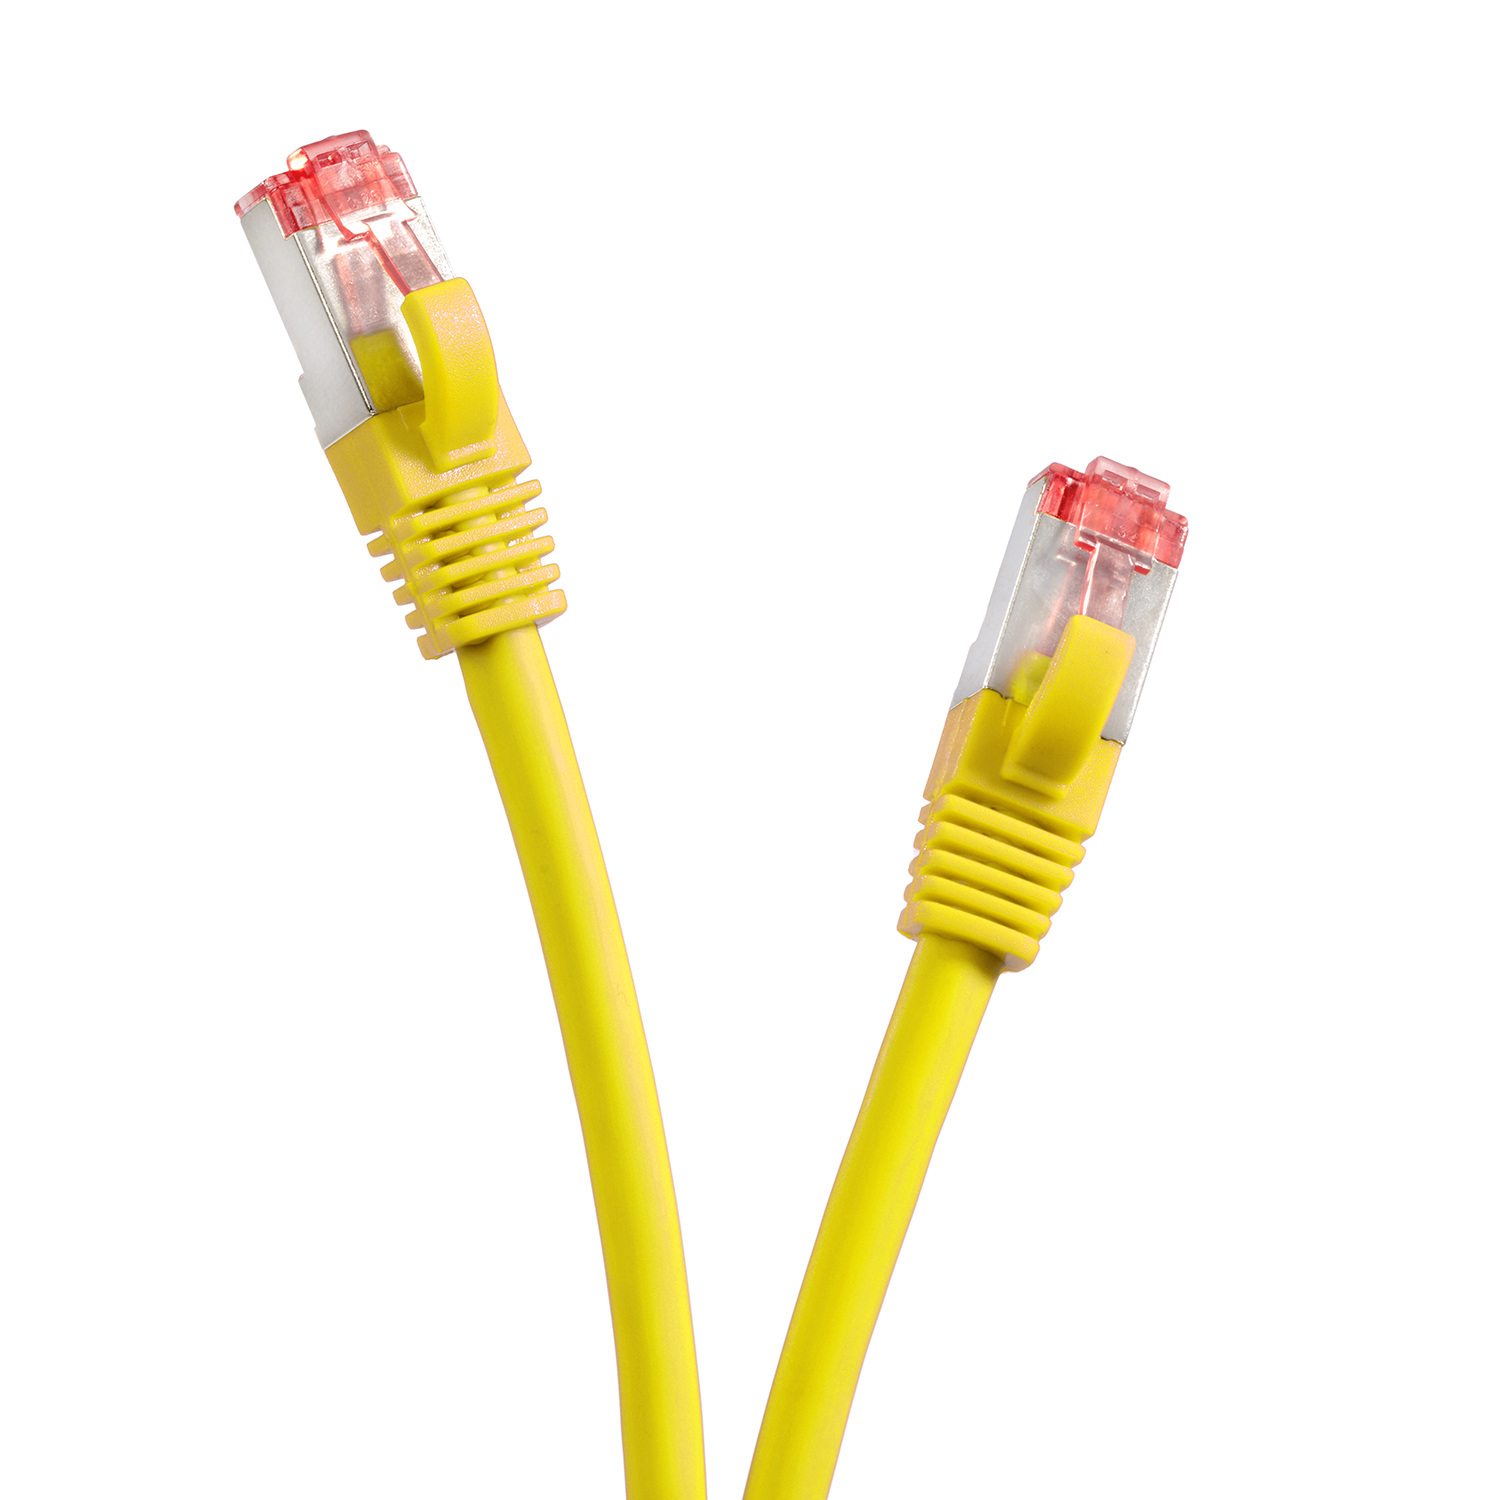 S/FTP 1,5 1000Mbit, / TPFNET Netzwerkkabel Netzwerkkabel, Pack 1,5m Patchkabel 5er gelb, m